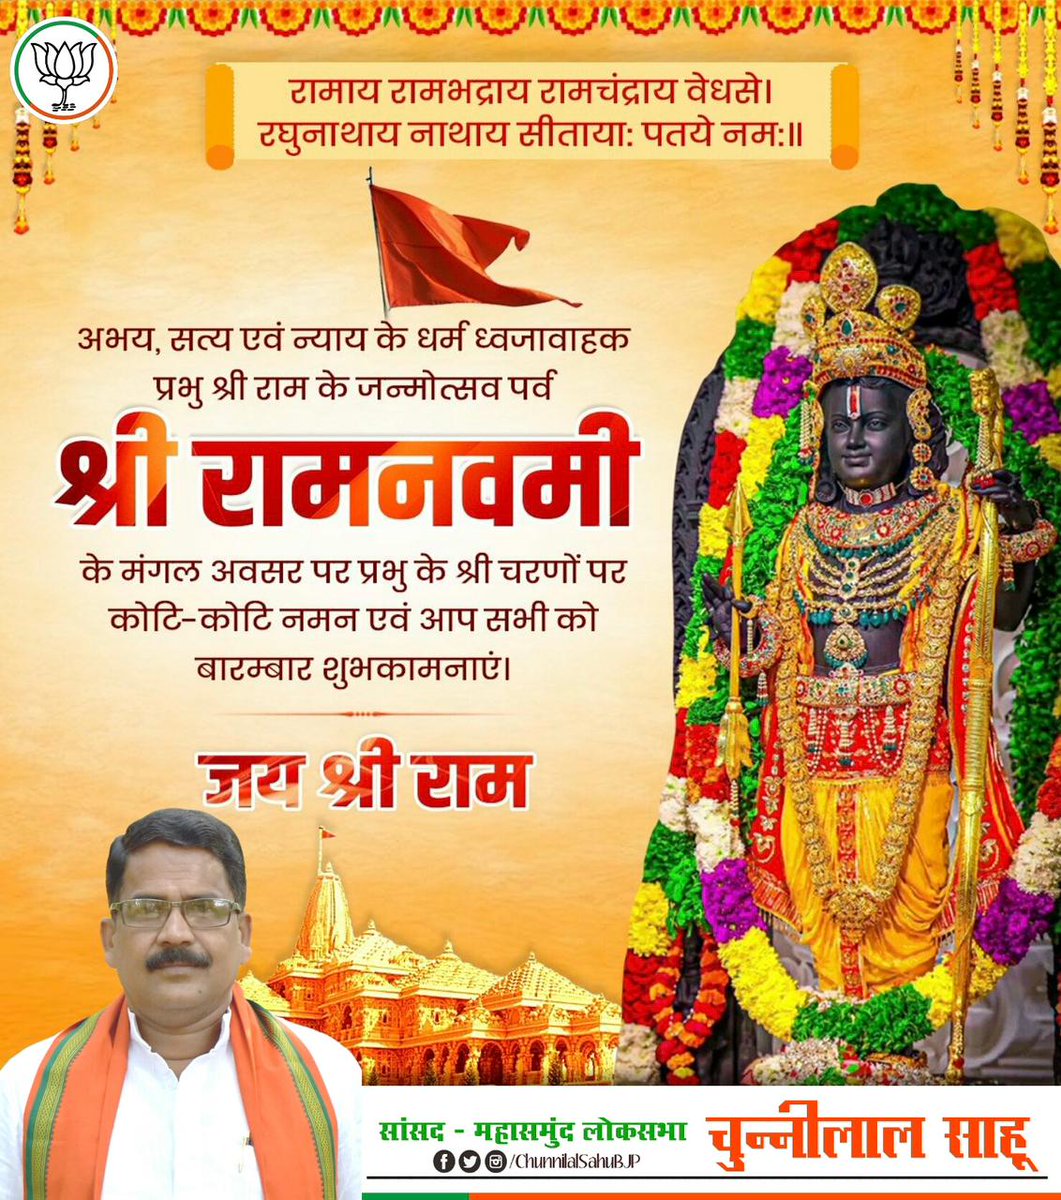 समस्त देशवासियों को प्रभु श्री राम चन्द्र जी के प्राकट्य दिवस राम नवमी के पावन पर्व की हार्दिक बधाई एवं शुभकामनाएं। मर्यादा पुरूषोत्तम भगवान श्री राम का जीवन चरित्र हम सभी के लिए प्रेरणाप्रद है। आप सभी पर प्रभु श्री राम की कृपादृष्टि बनी रहे, ऐसी प्रार्थना है। #shreeramnavmi